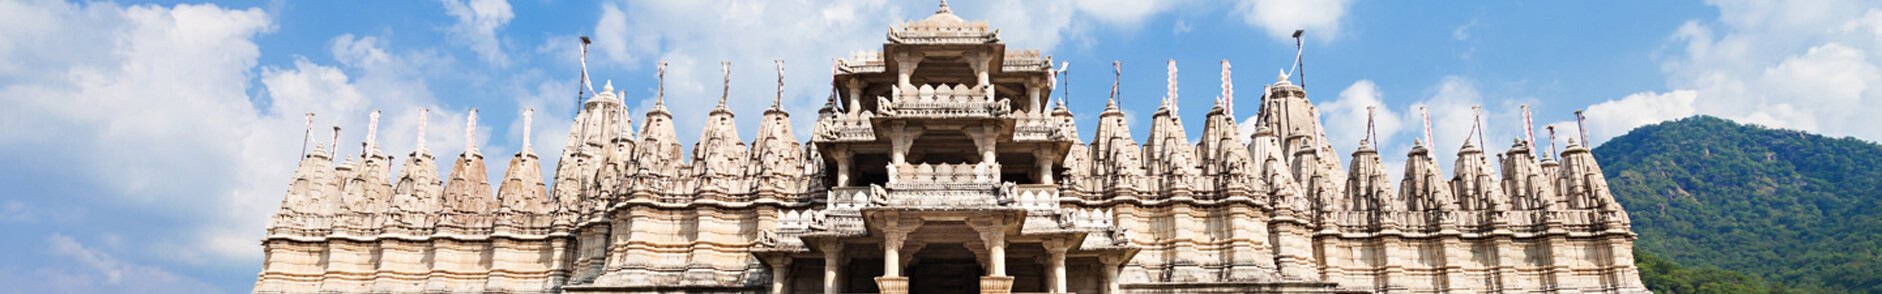 Shri Mahavirji Jain Temple, Rajasthan